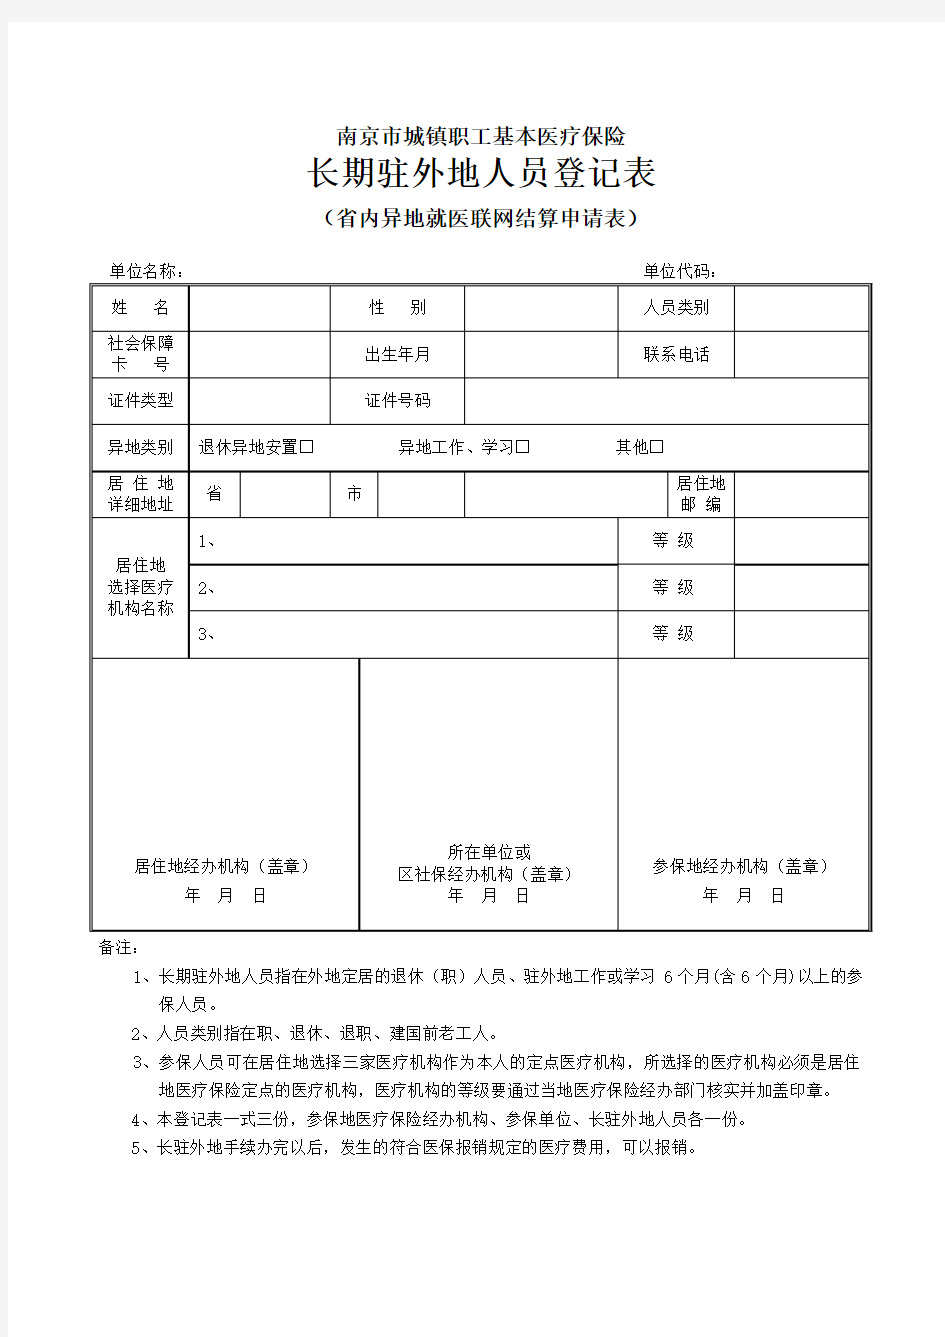 南京市城镇职工基本医疗保险长期驻外地人员登记表(省内联网)